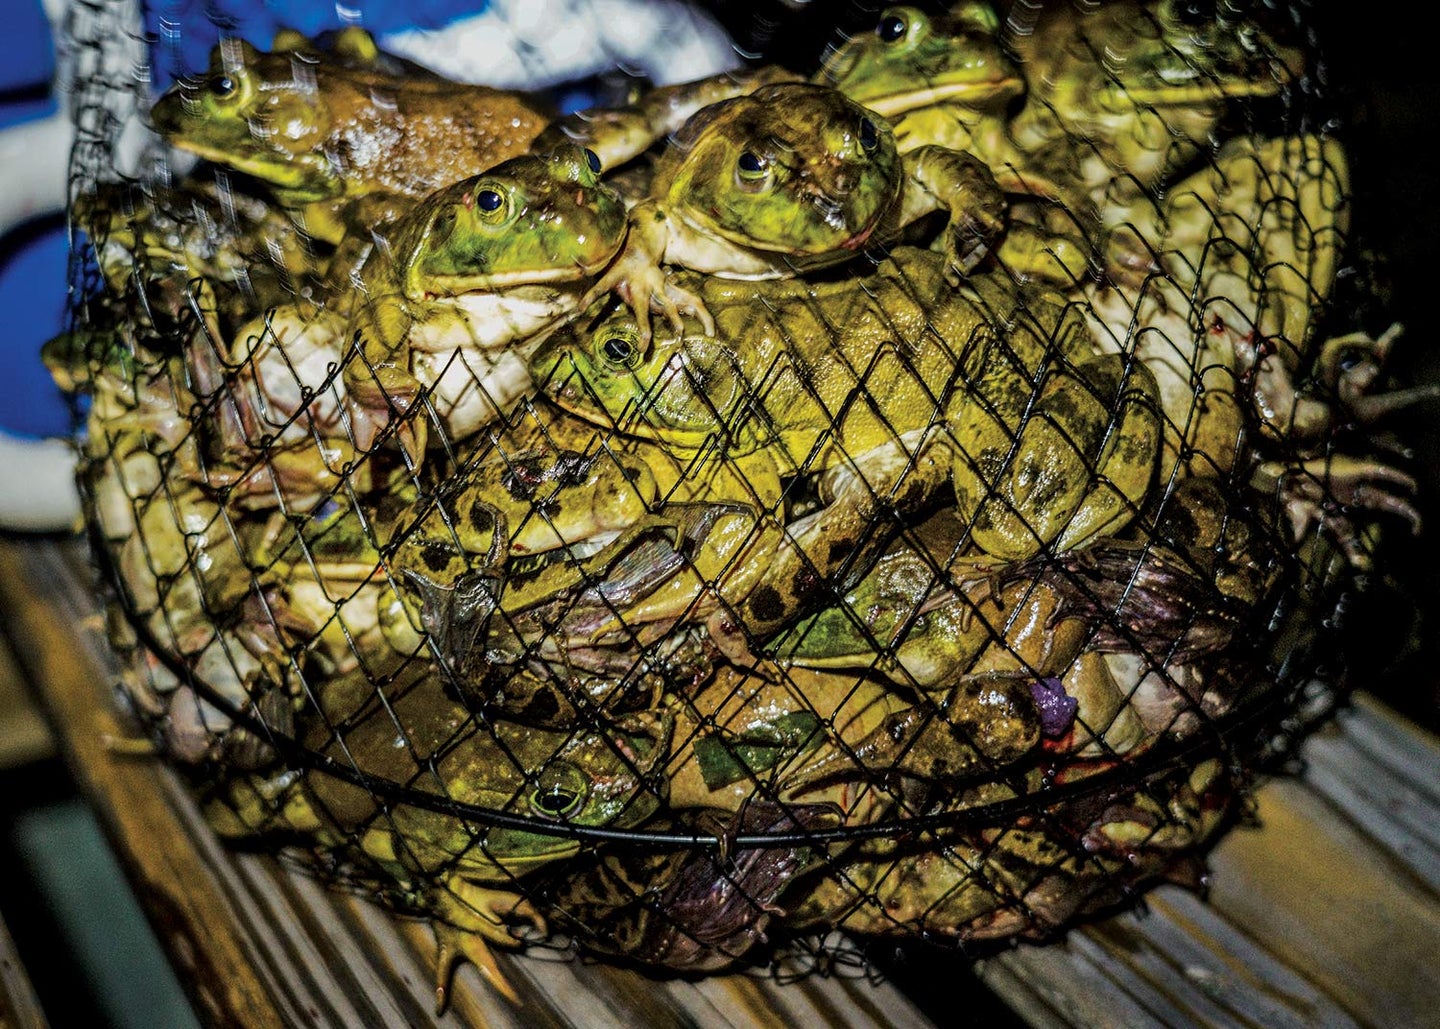 a fishing net basket full of frogs